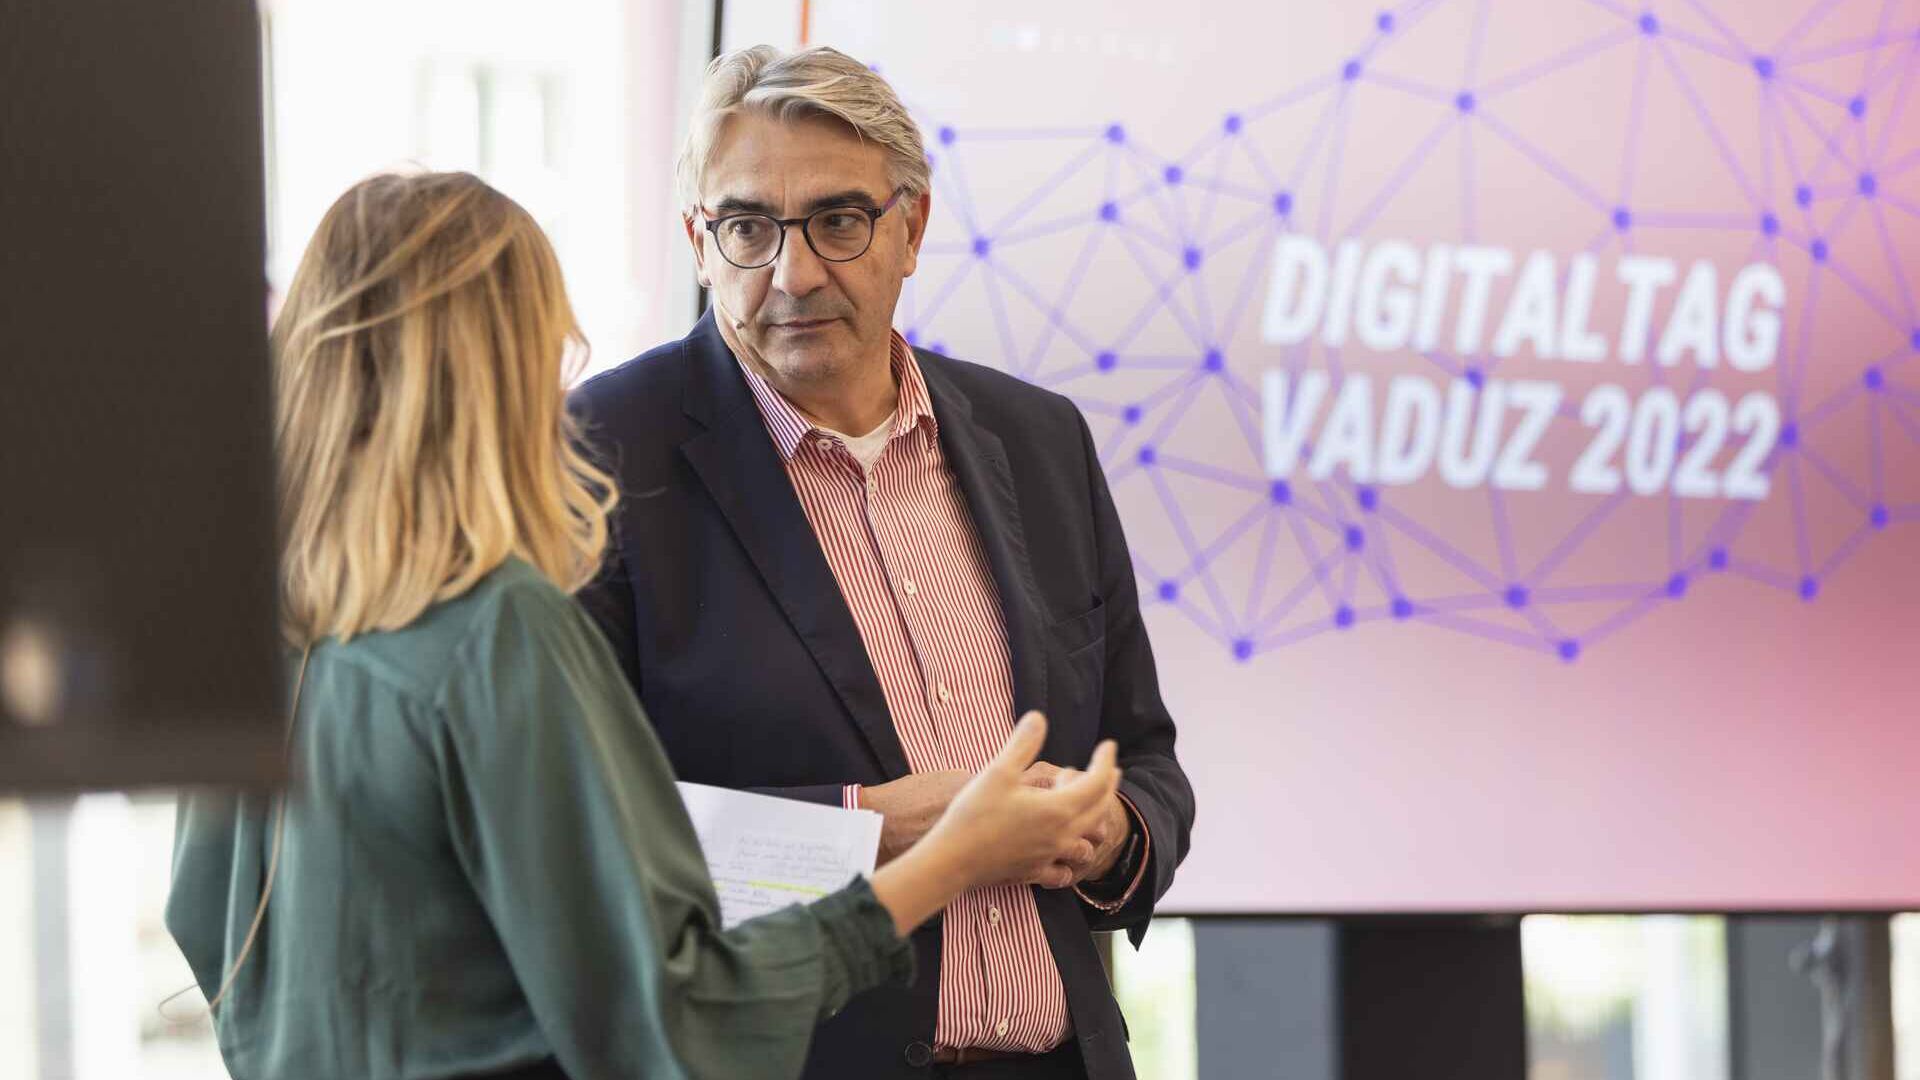 "Digitaltag Vaduz" ble ønsket velkommen av Kunstmuseum i hovedstaden i fyrstedømmet Liechtenstein lørdag 15. oktober 2022